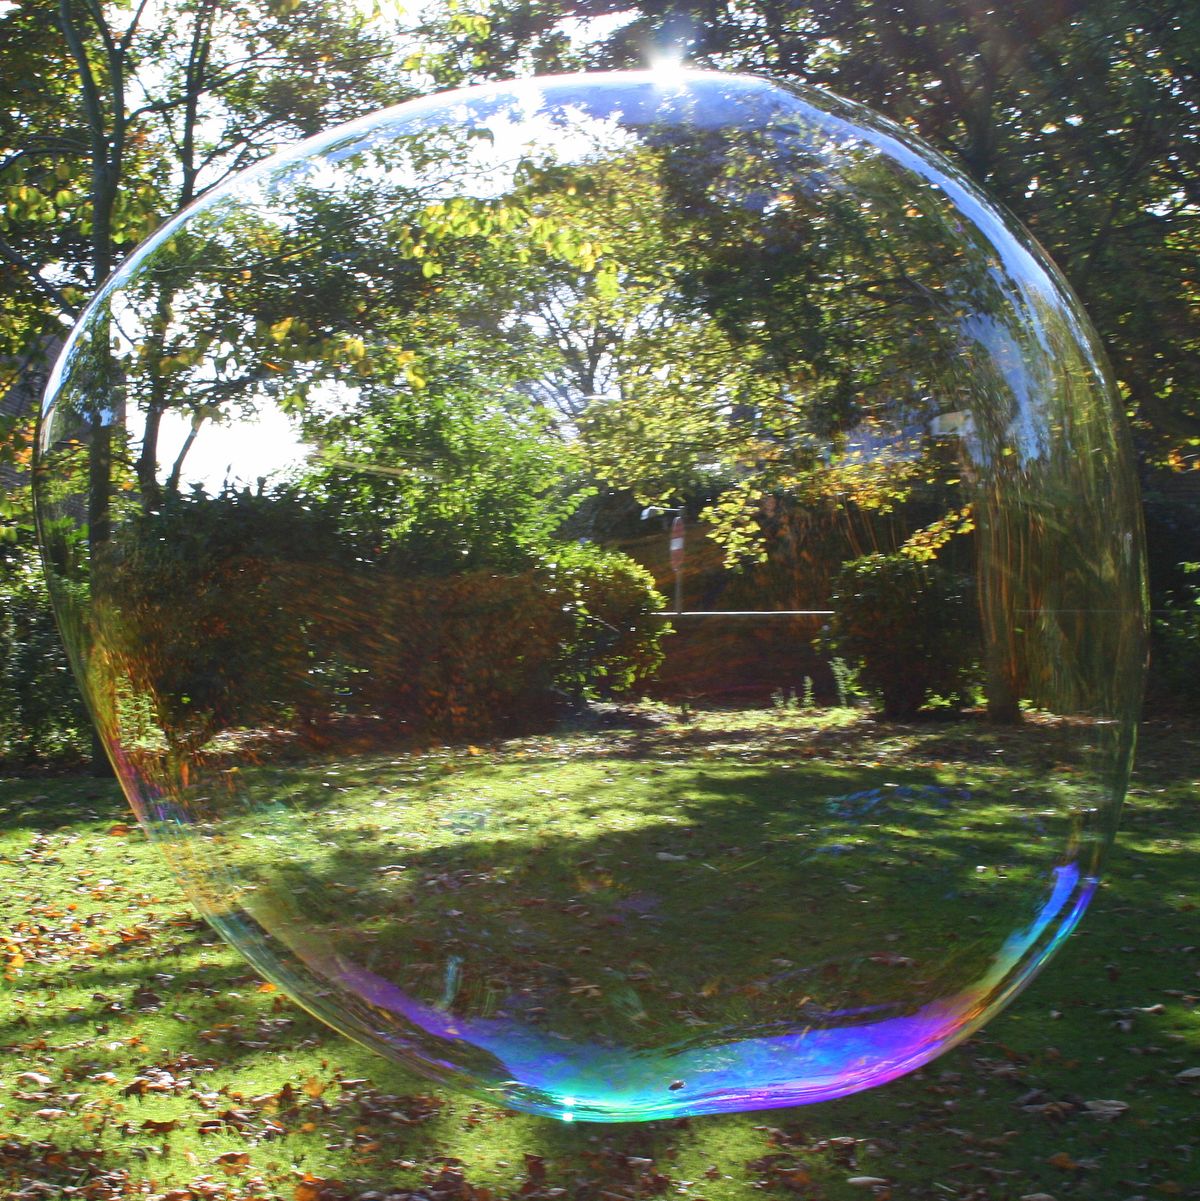 .Large soap bubble in park